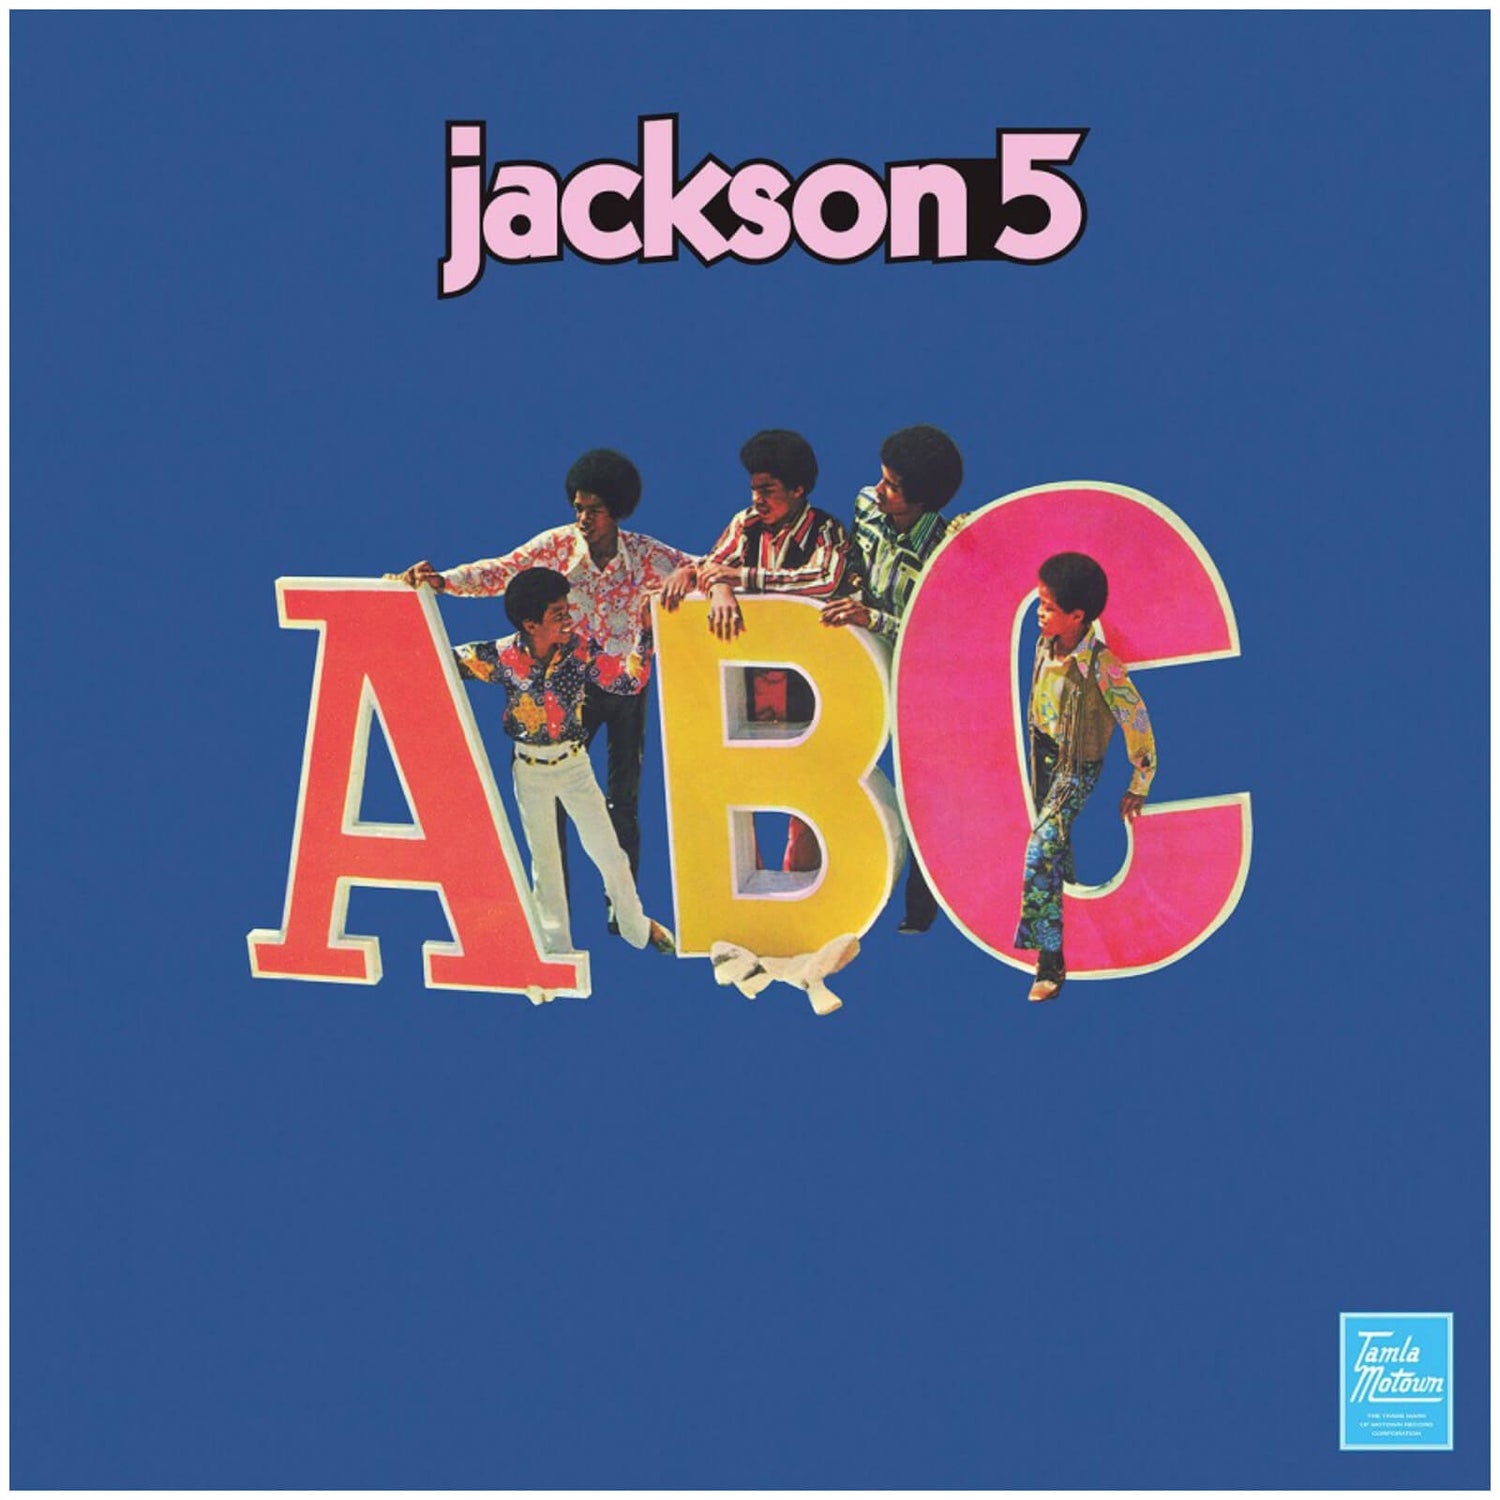 Jackson 5 - ABC 180g Vinyl